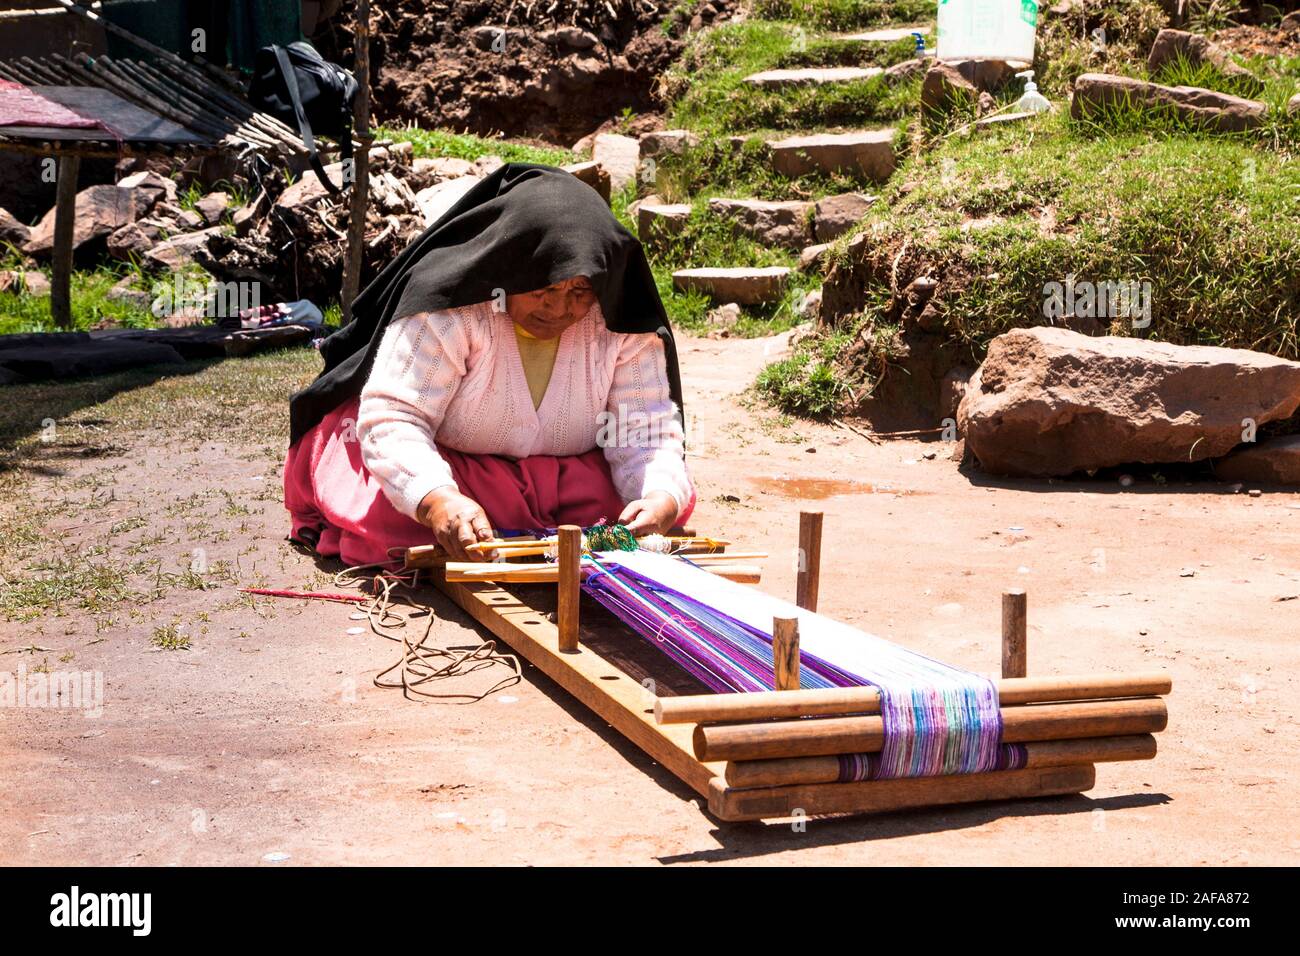 Taquile, Peru - Jan 5, 2019: Frau in traditioneller Kleidung macht Weben auf die Pause zu Insel Taquile im Titicacasee in Peru. Stockfoto